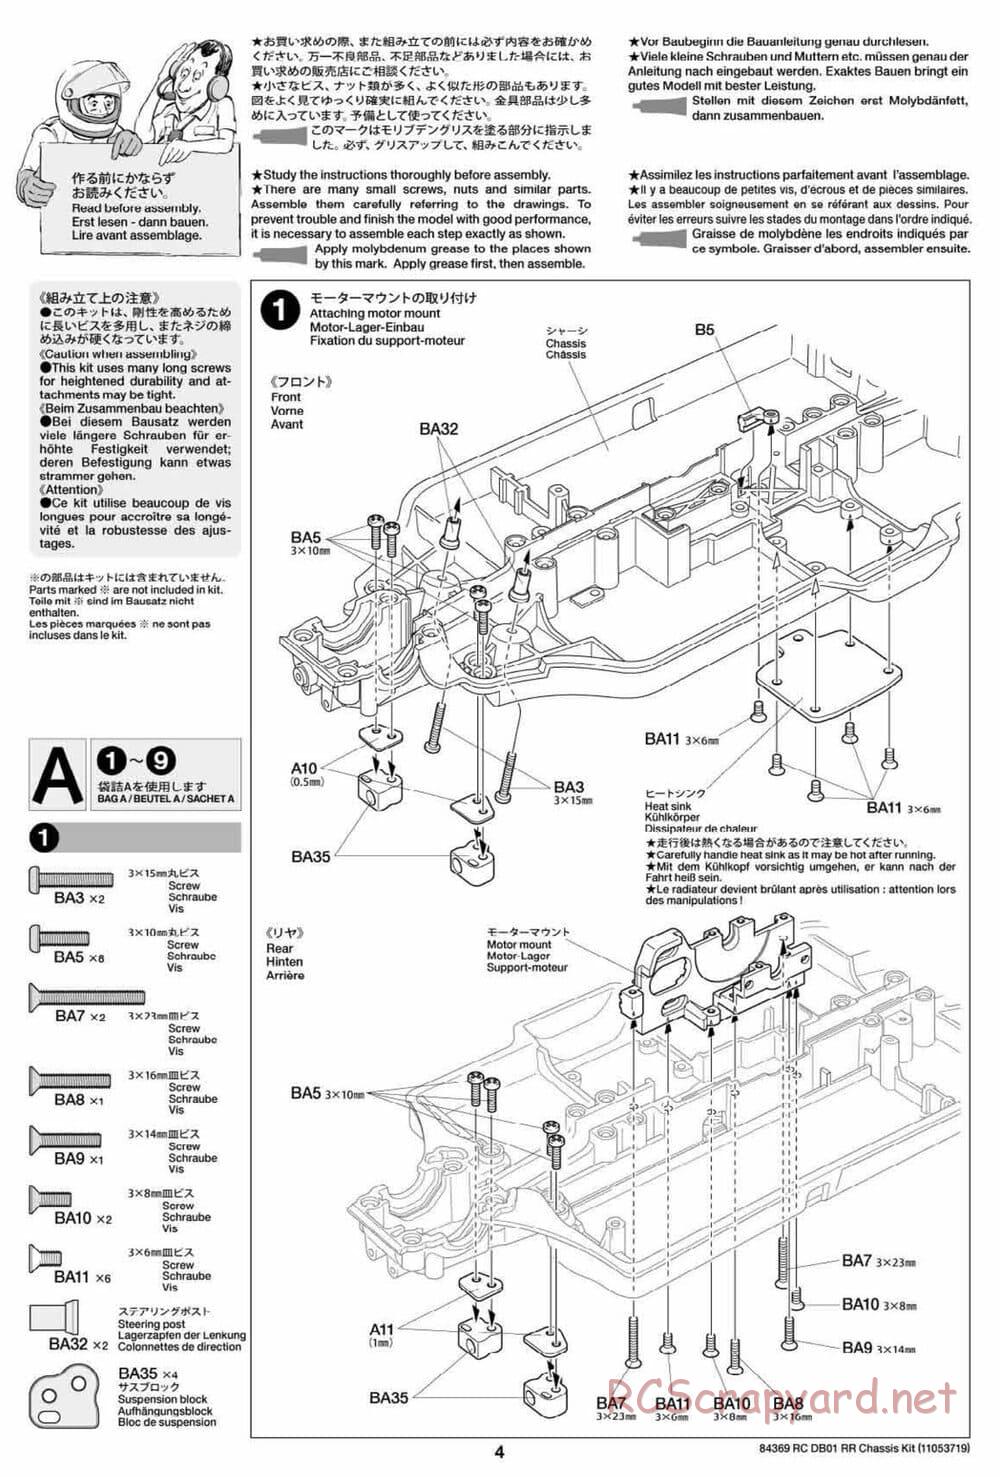 Tamiya - DB-01 RR Chassis - Manual - Page 4